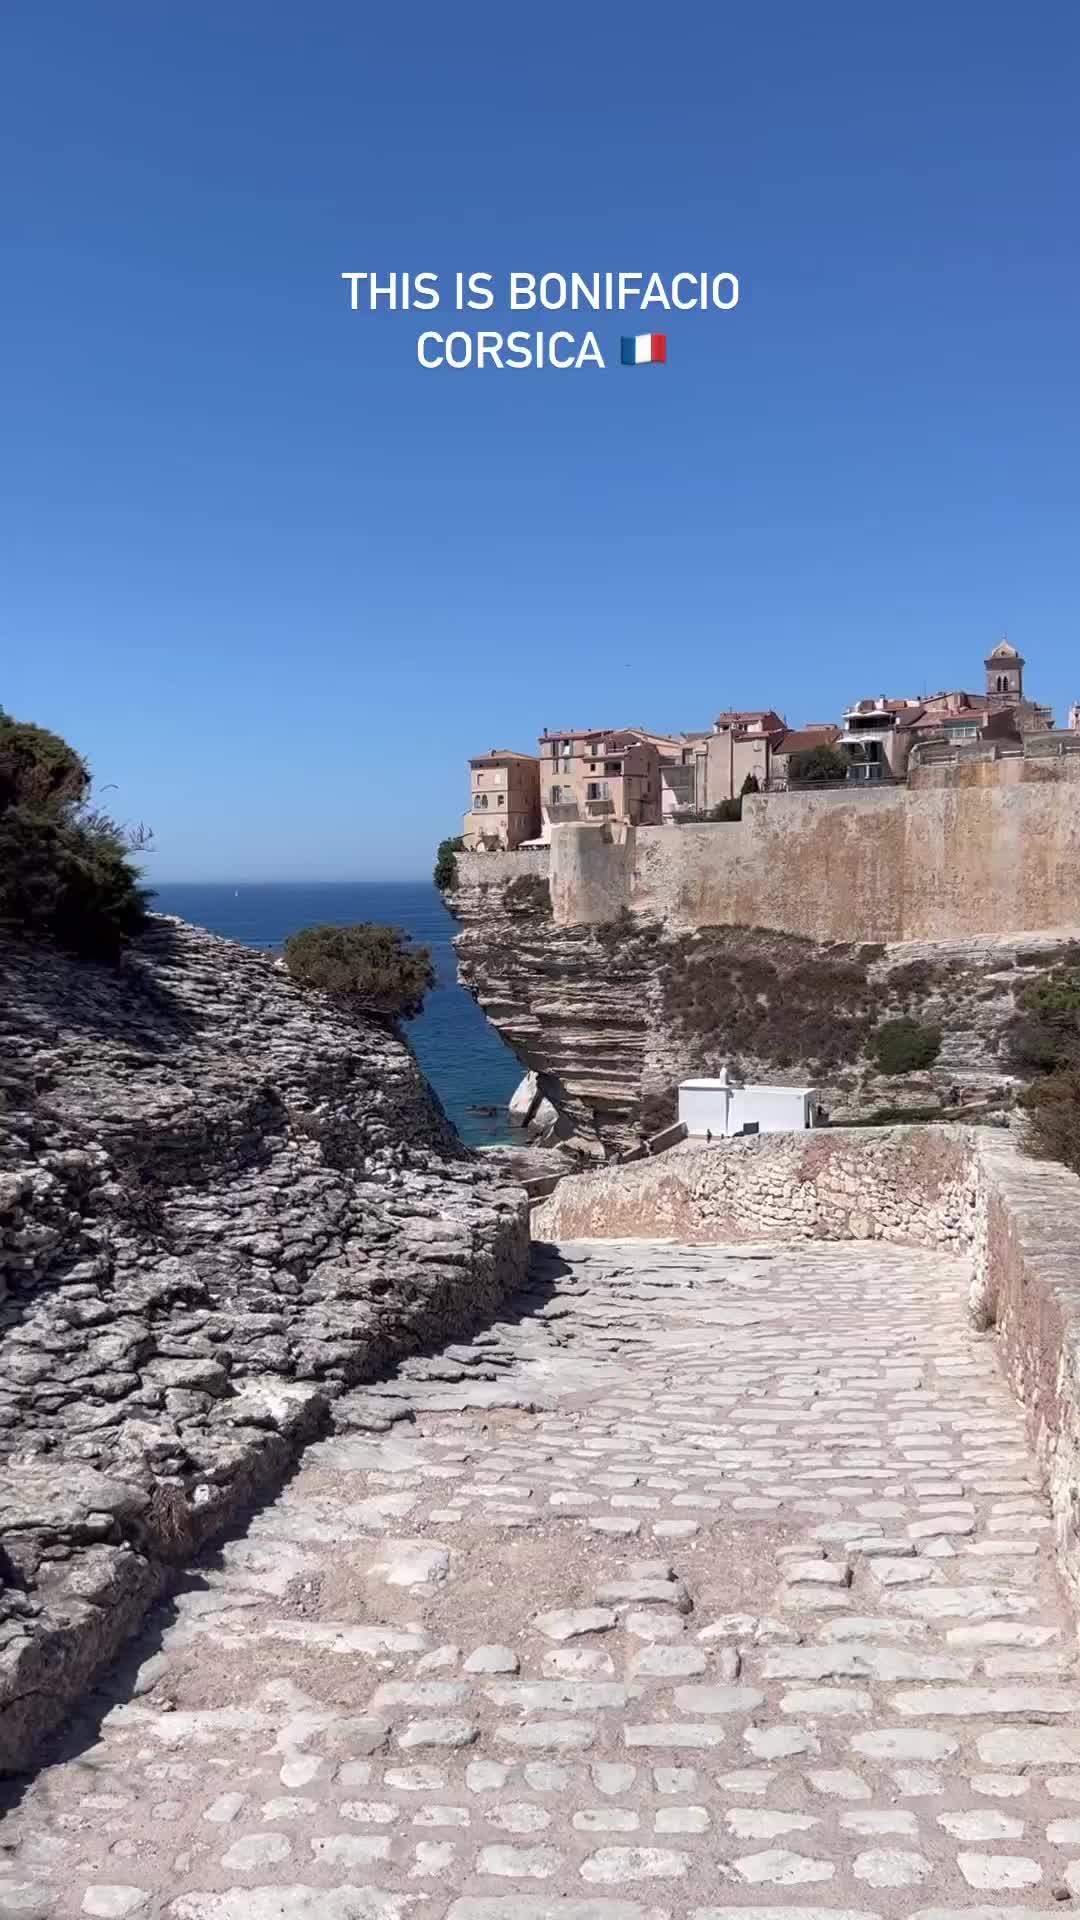 Explore Bonifacio: Corsica's Oldest Town on Cliffs